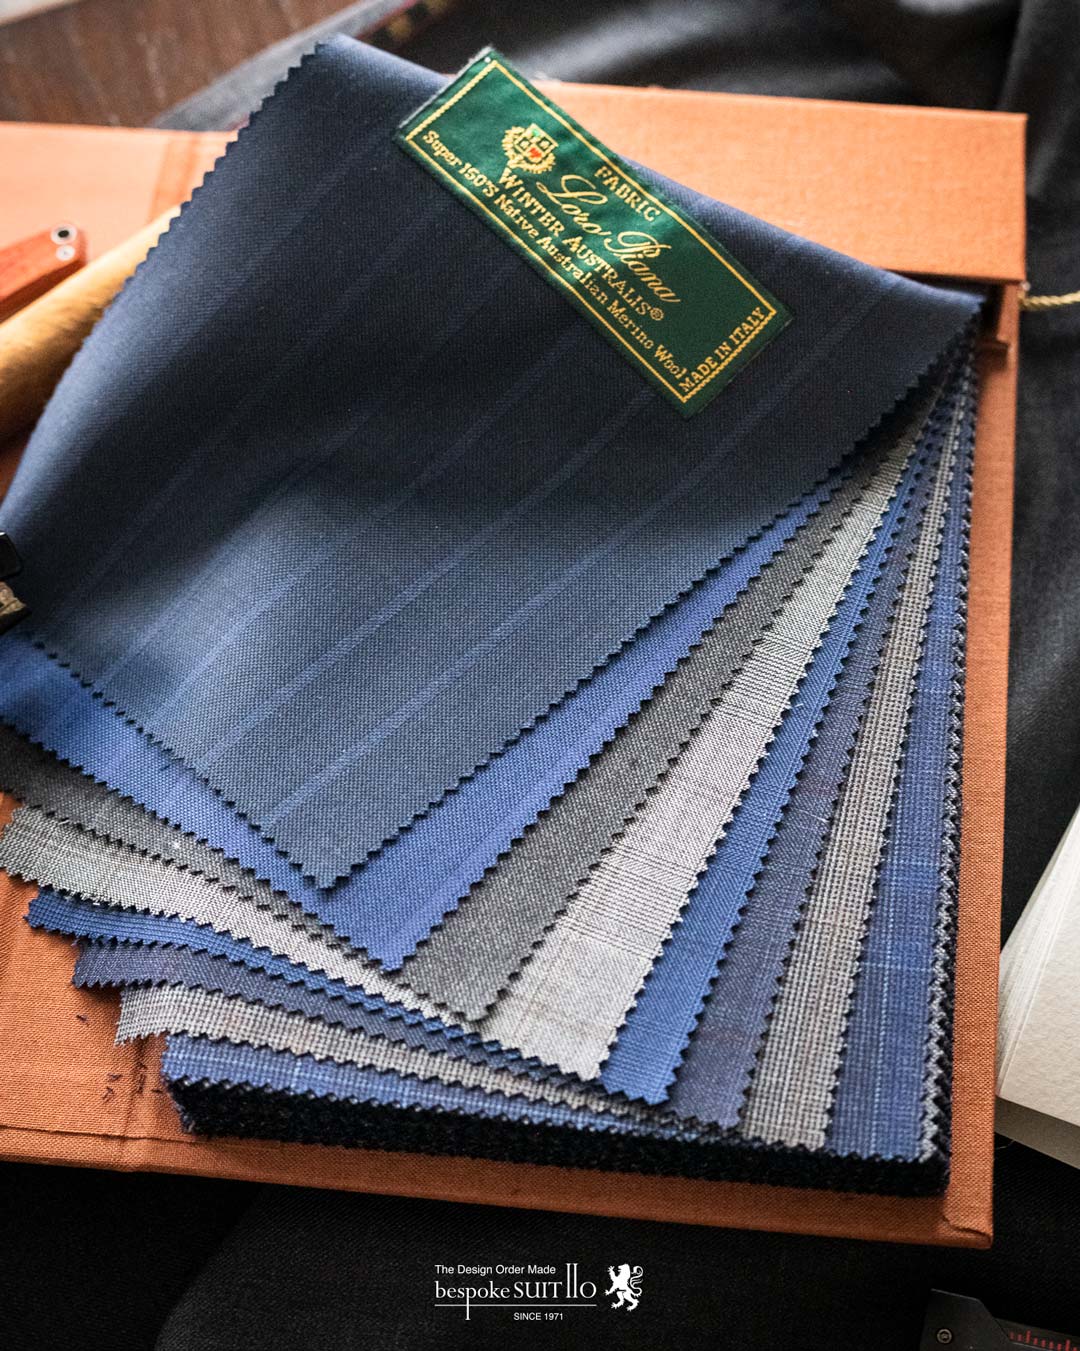  ロロピアーナは、1924年にピエトロ・ロロ・ピアーナがイタリアのクアローナで創業した最高級カシミヤと最高級ウールを取り扱う服地のトップメーカーです 。糸の原料となる繊維の生産から糸を作るための紡績、そして織り上がった布地をスーツやコートなどに仕立てる製品開発まで、一貫して自社で行っています 。 2013年には、LVMH（モエ・ヘネシー・ルイ・ヴィトン）グループが、発行済み株式の80％を取得し、買収しました。株式の残り20％は「ロロ・ピアーナ」創業一族が保持しています 2023aw秋冬新柄コレクション入荷 ,ordersuits,ドレスシャツオーダージャケット,orderJacket,オーダーベスト,oedervest,ビスポーク,,オーダーシャツ,オーダースーツ,背広,誂え,仕立,紳士,福岡,黒崎,小倉,北九州,八幡西区,ビスポークスーツ１１０,bespokeSUIT110,bespokeSUITIIO,